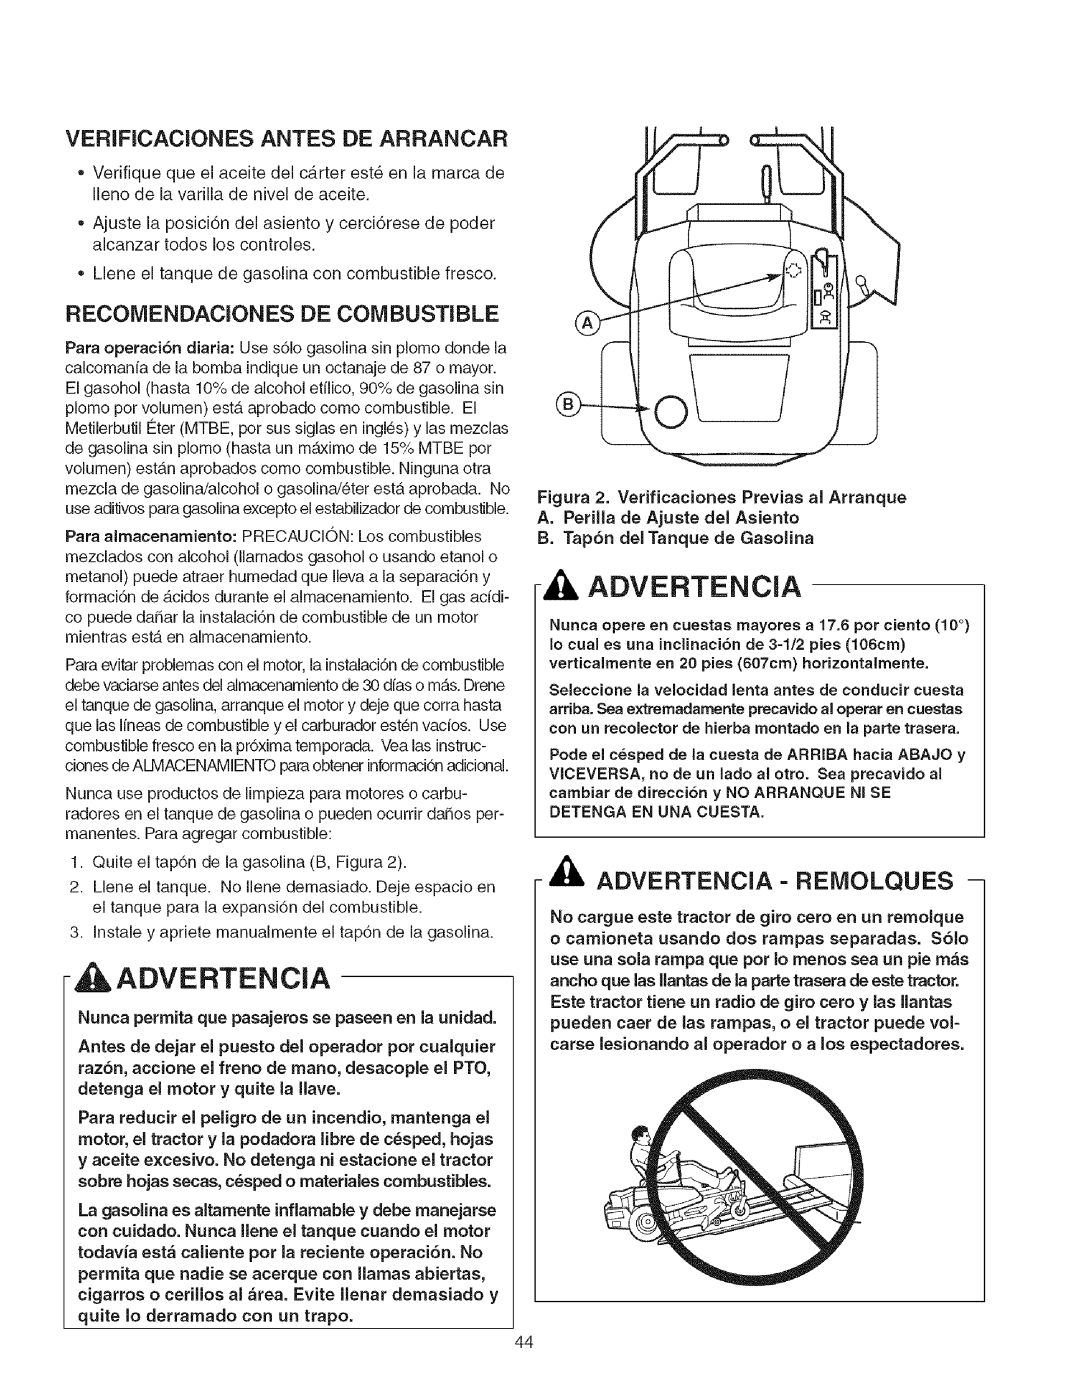 Craftsman 107.2777 manual Advertencia- Reiviolques, Verificaciones Antes De Arrancar, Recomendaciones De Combustible 